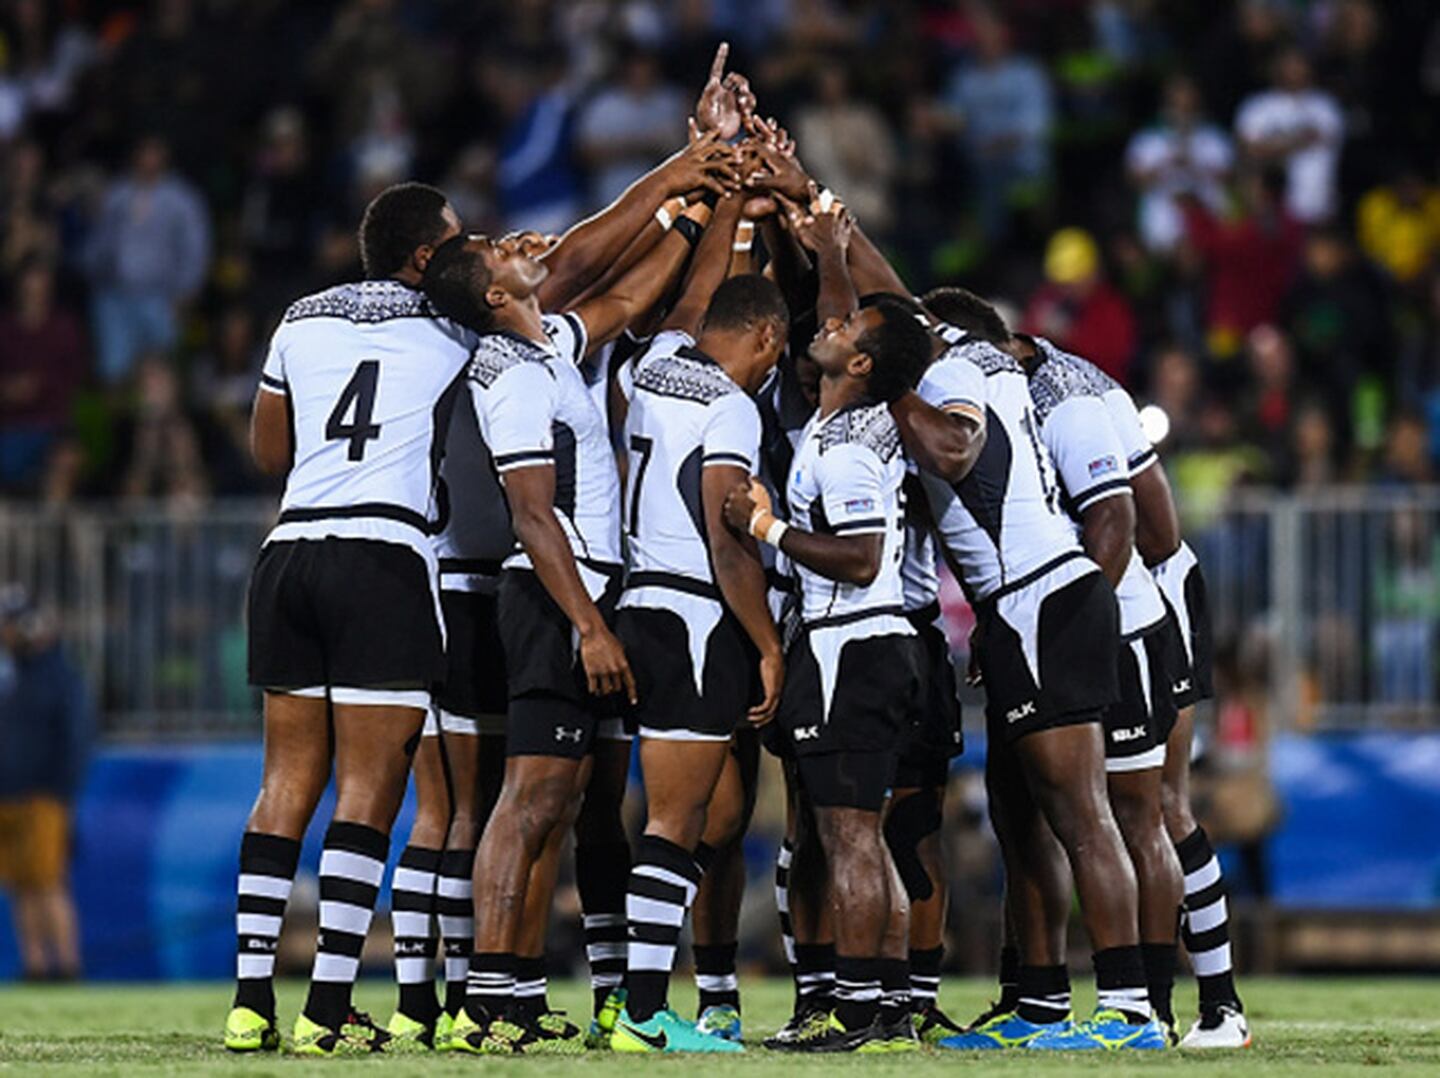 Fiji ganó medalla de Oro en Rugby